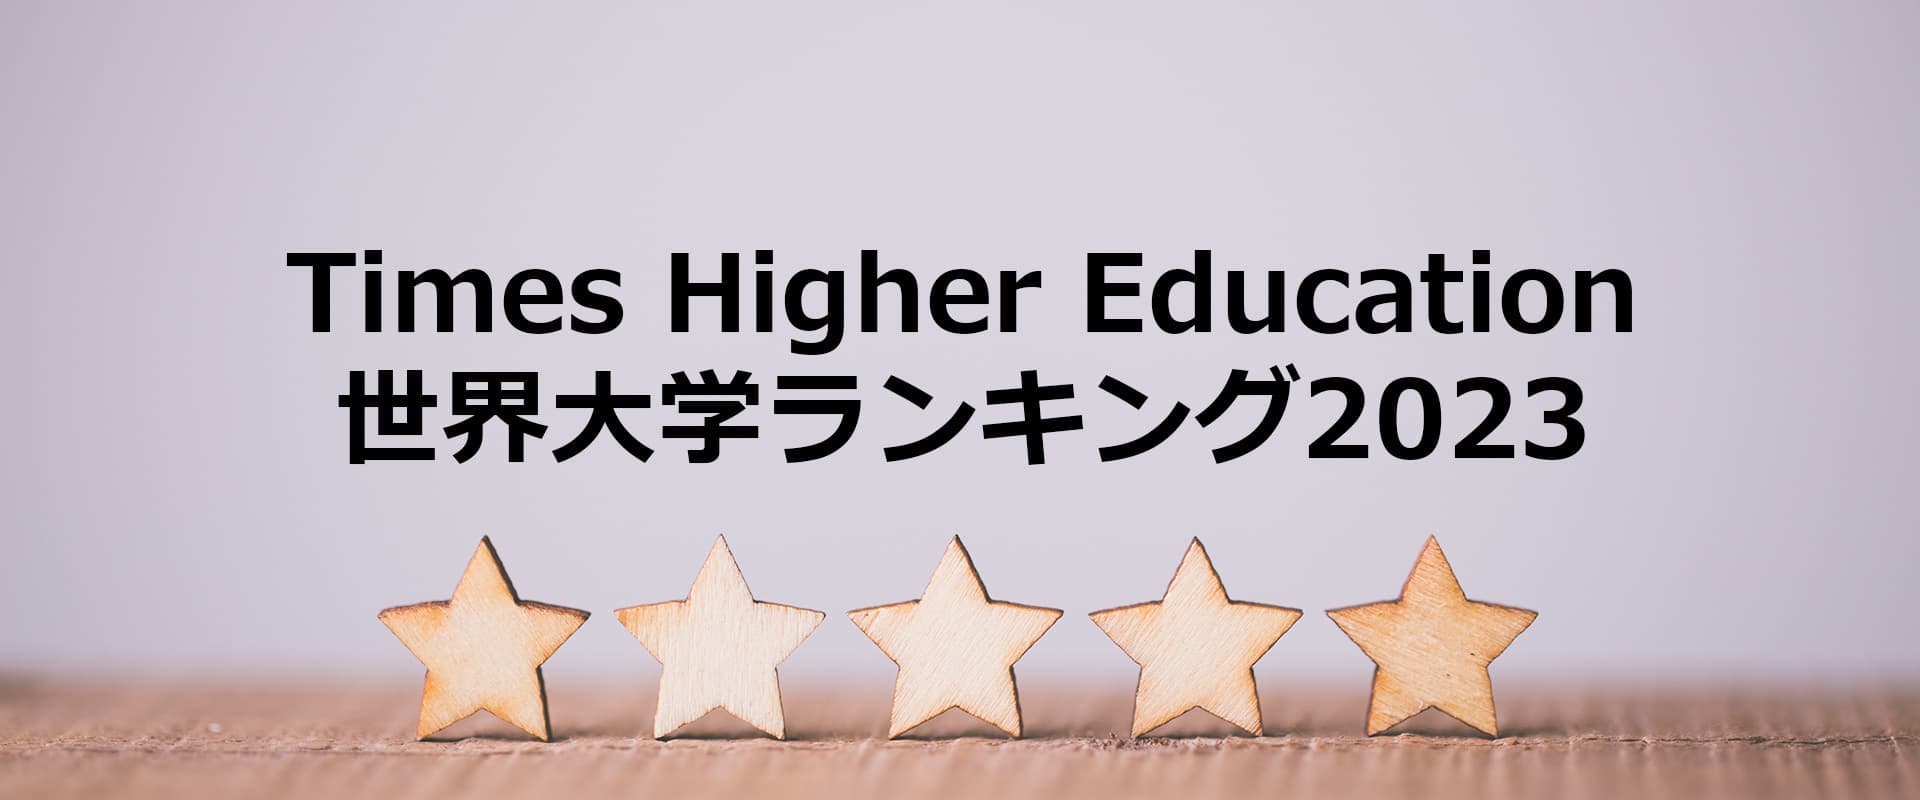 Times Higher Education世界大学ランキング2023